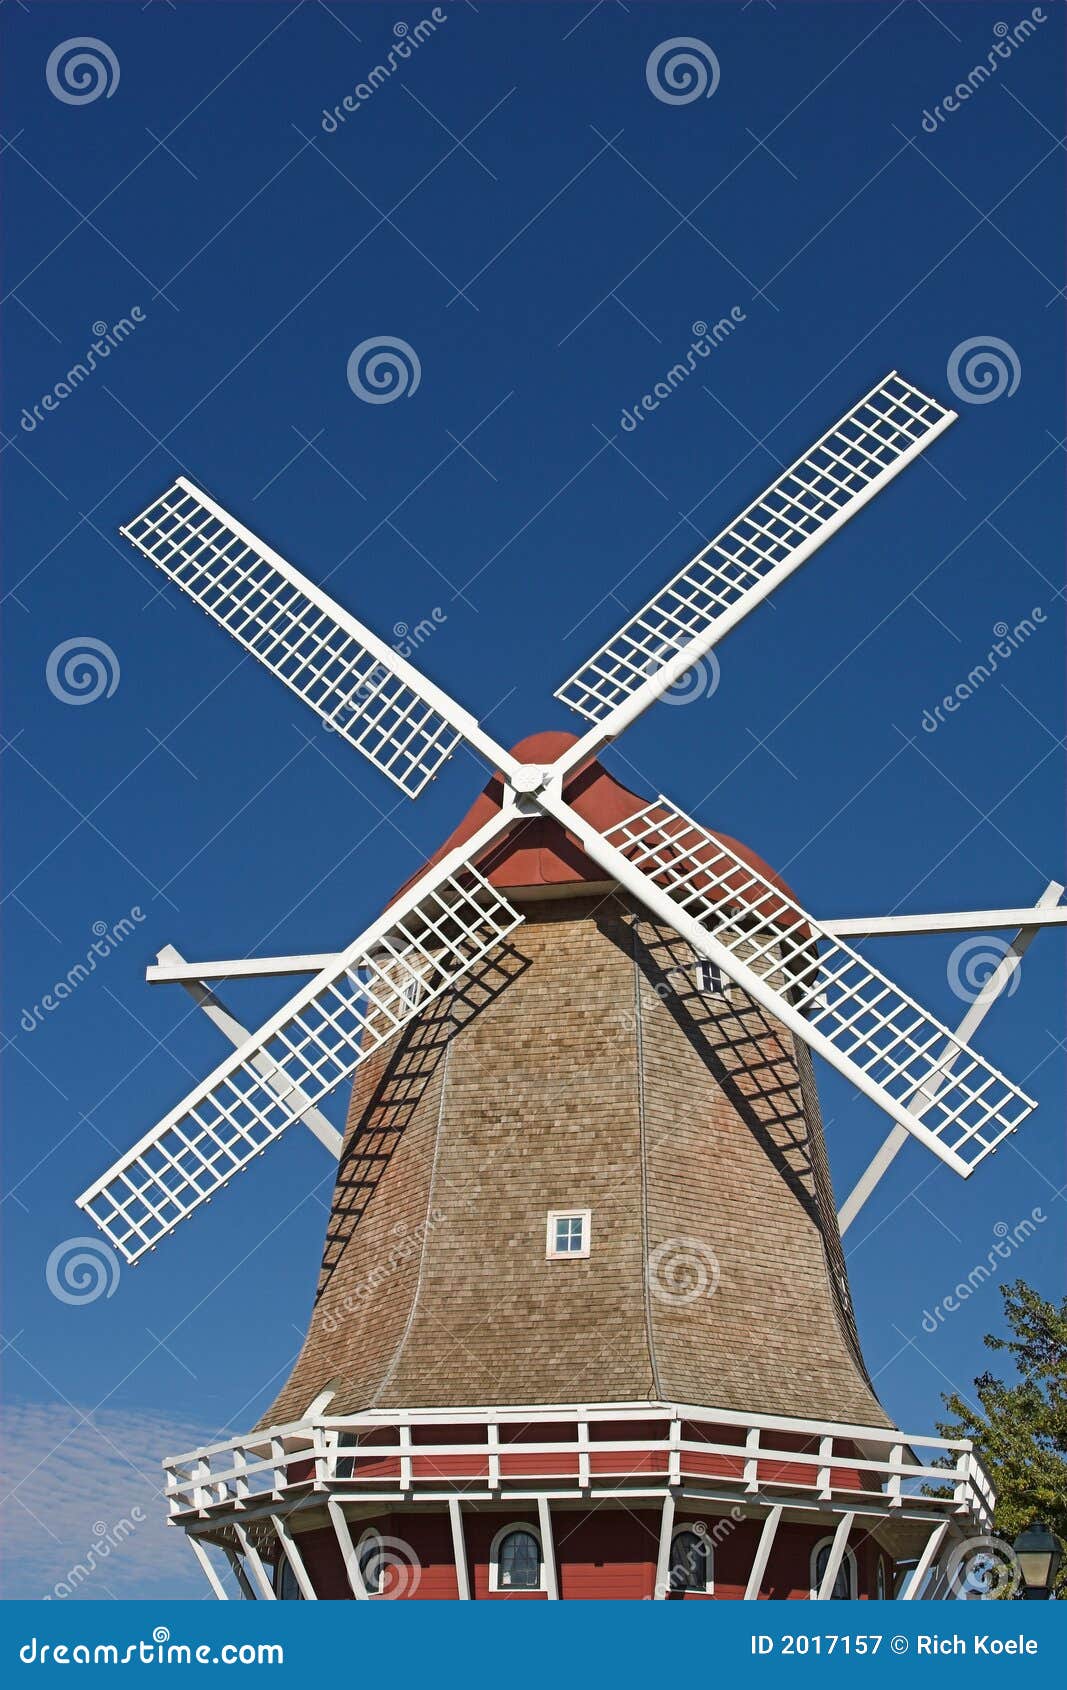 Dutch Windmill Plans Free